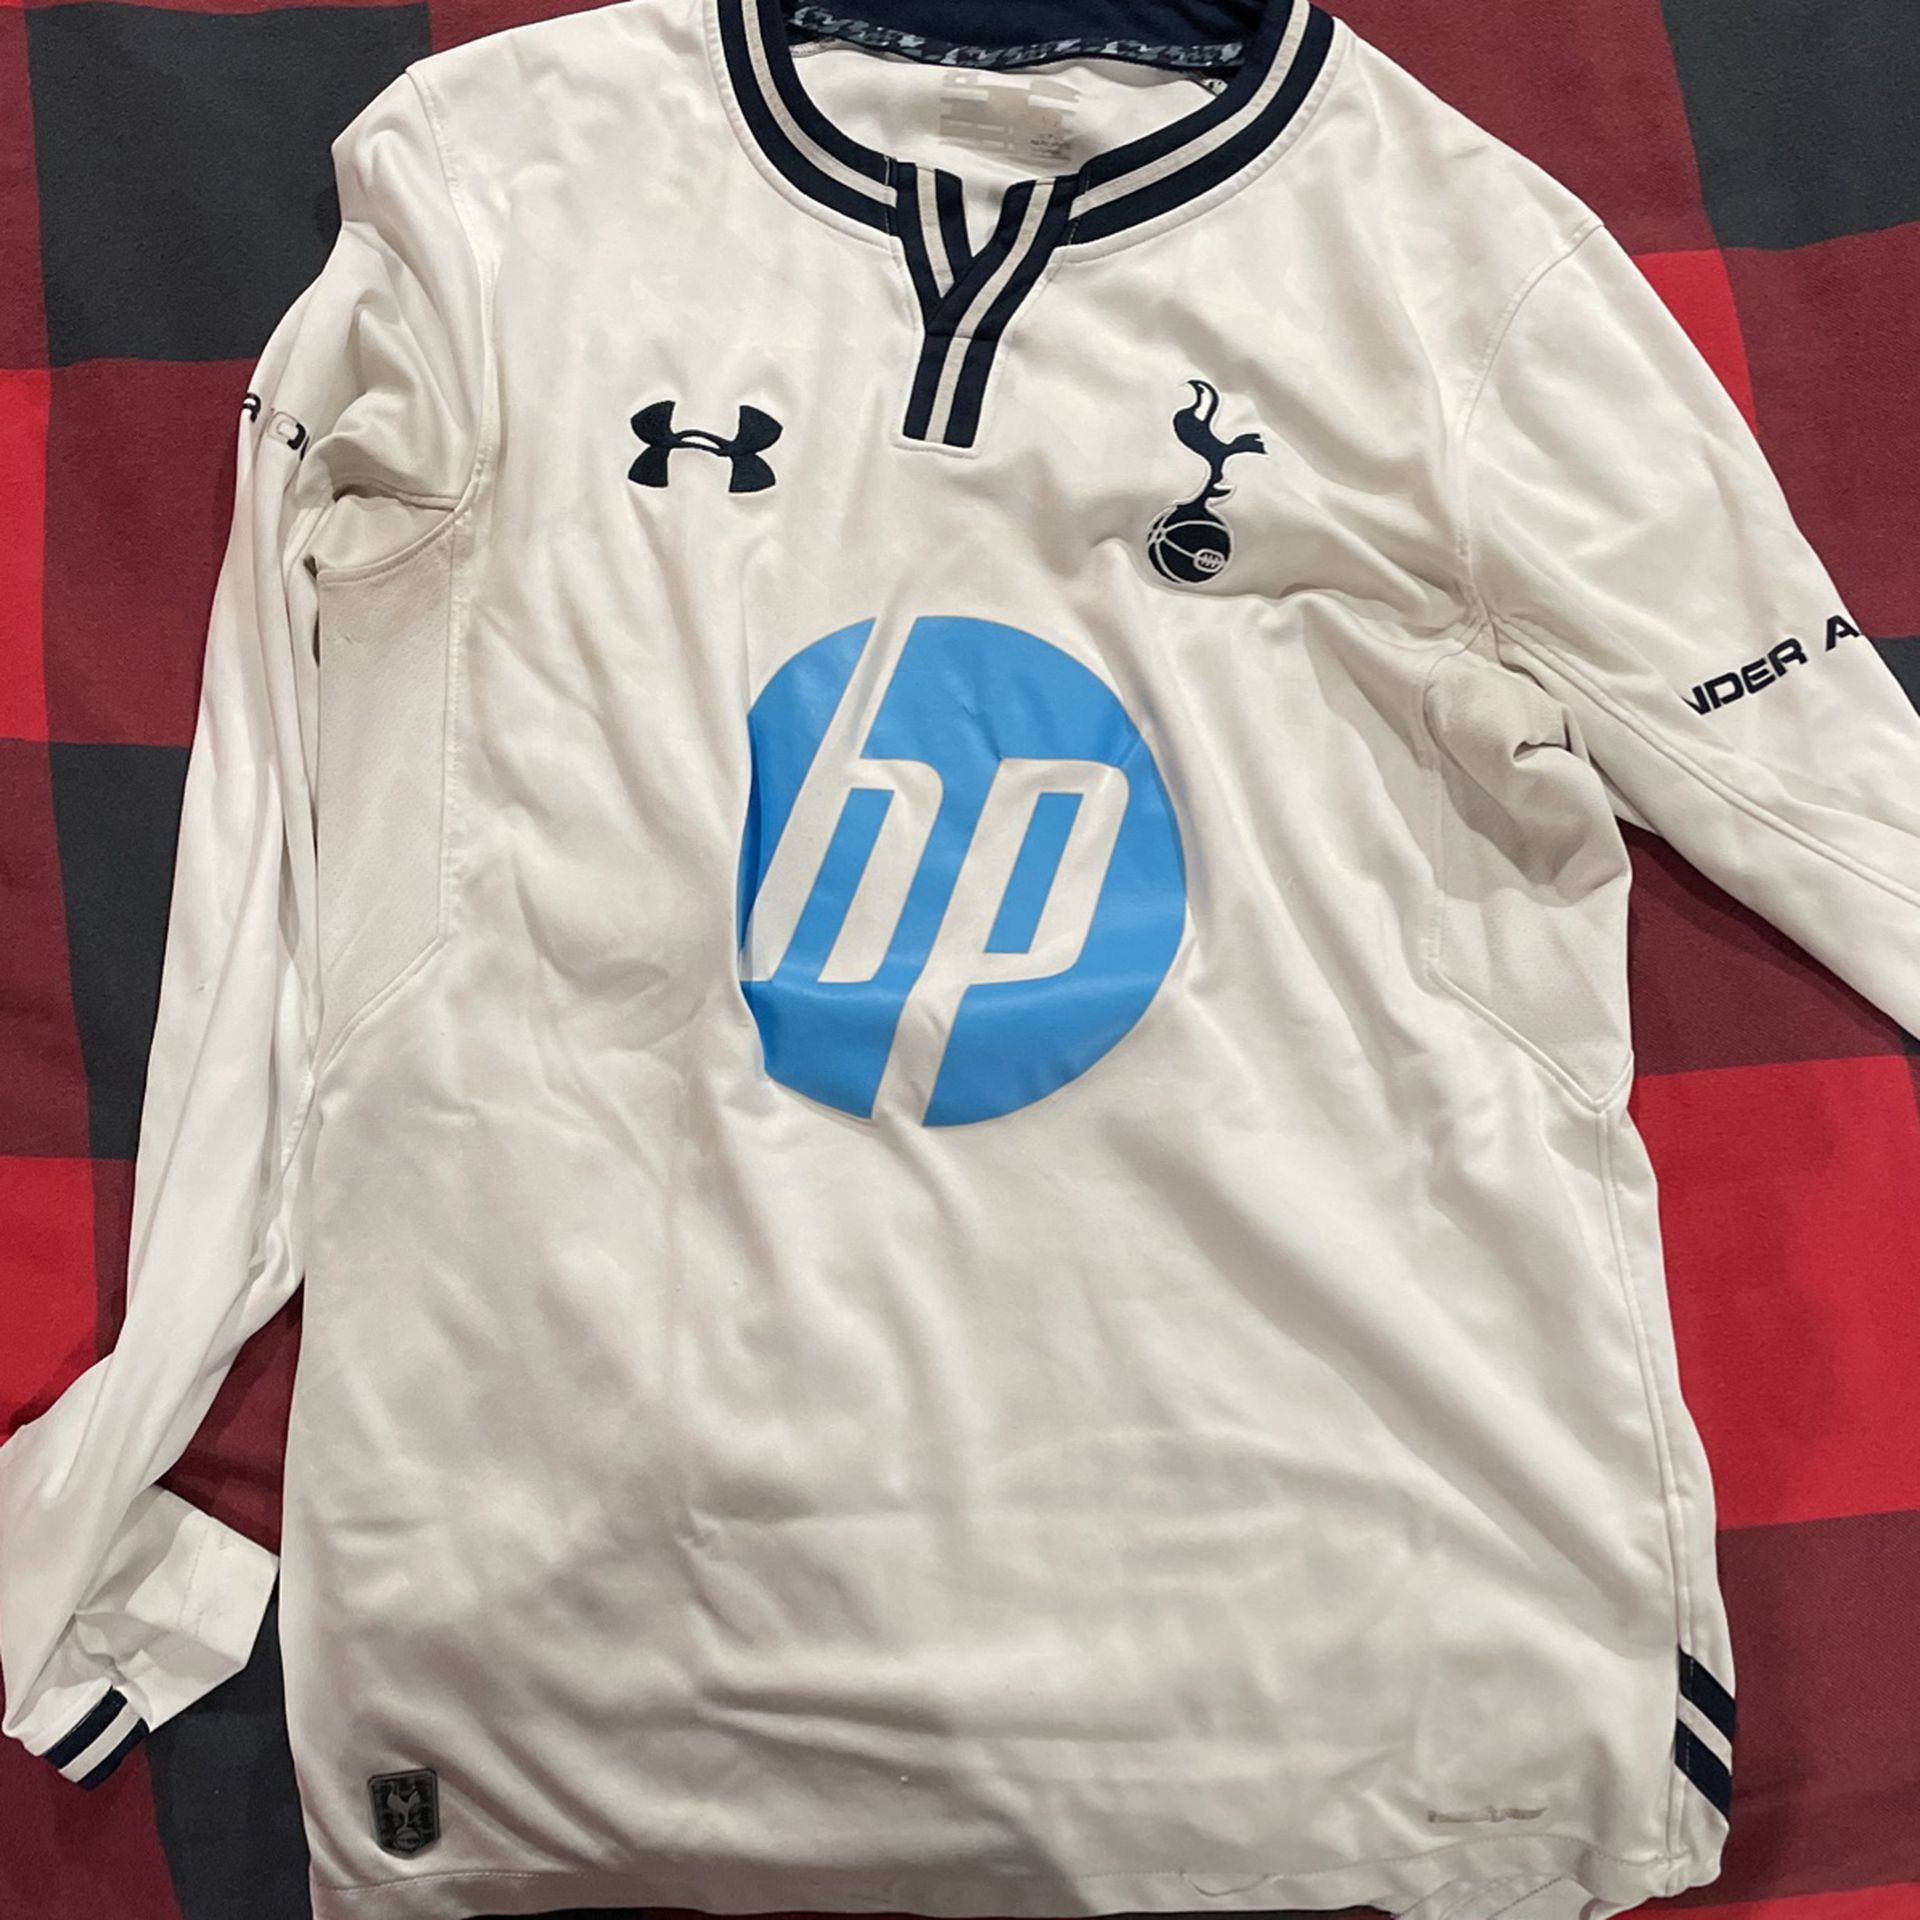 Vintage Tottenham Jersey/Kit Size m (authentic)